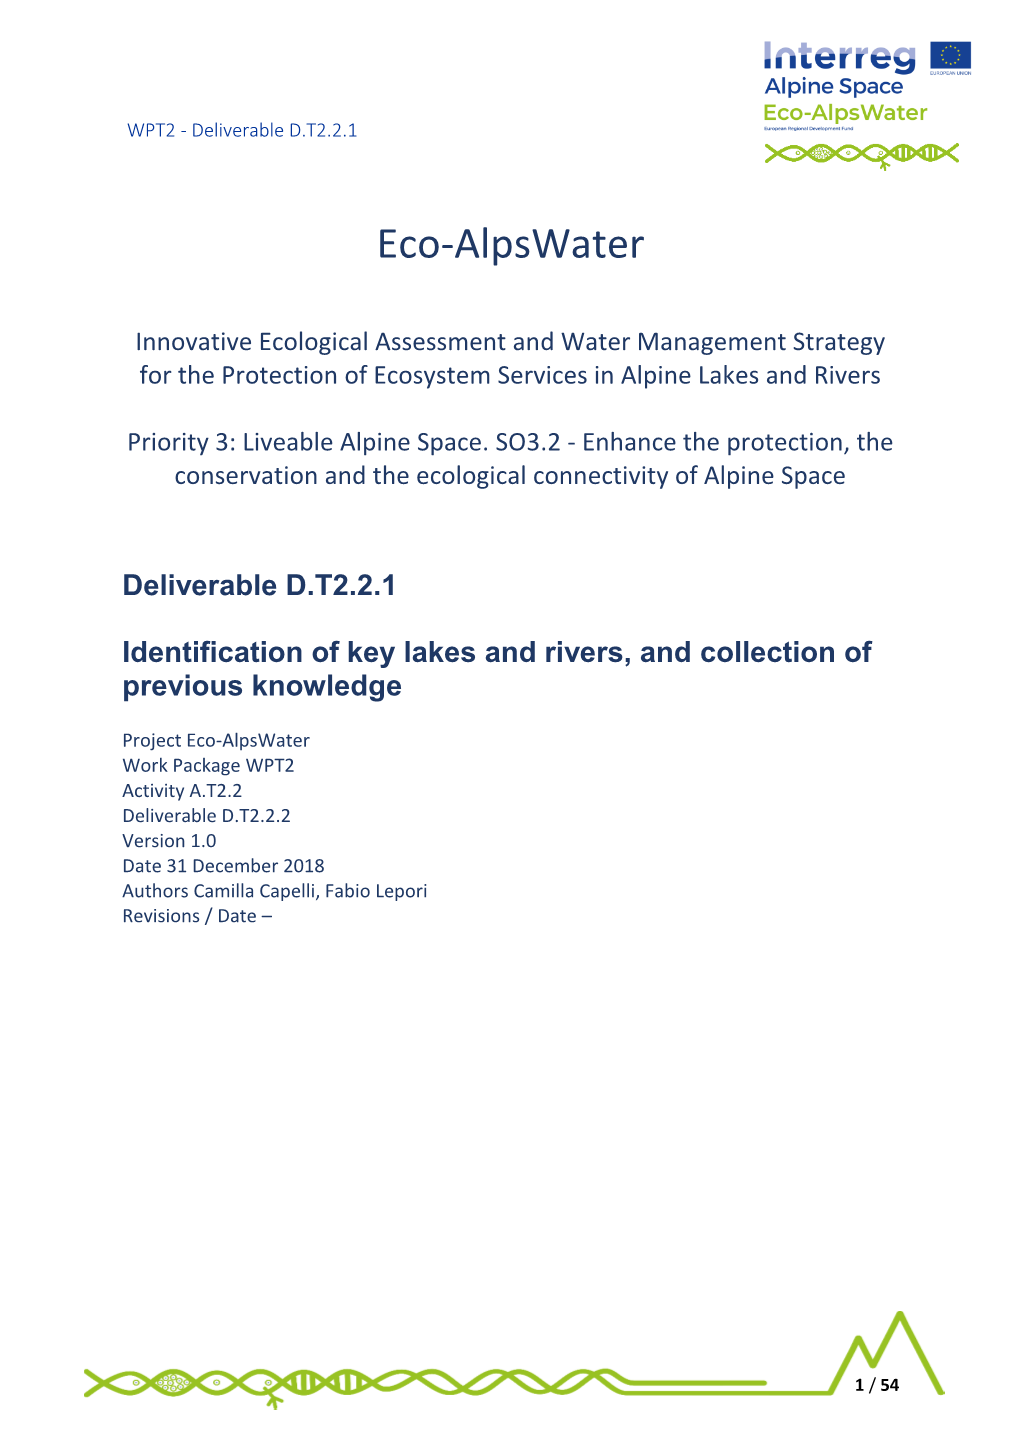 Eco-Alpswater